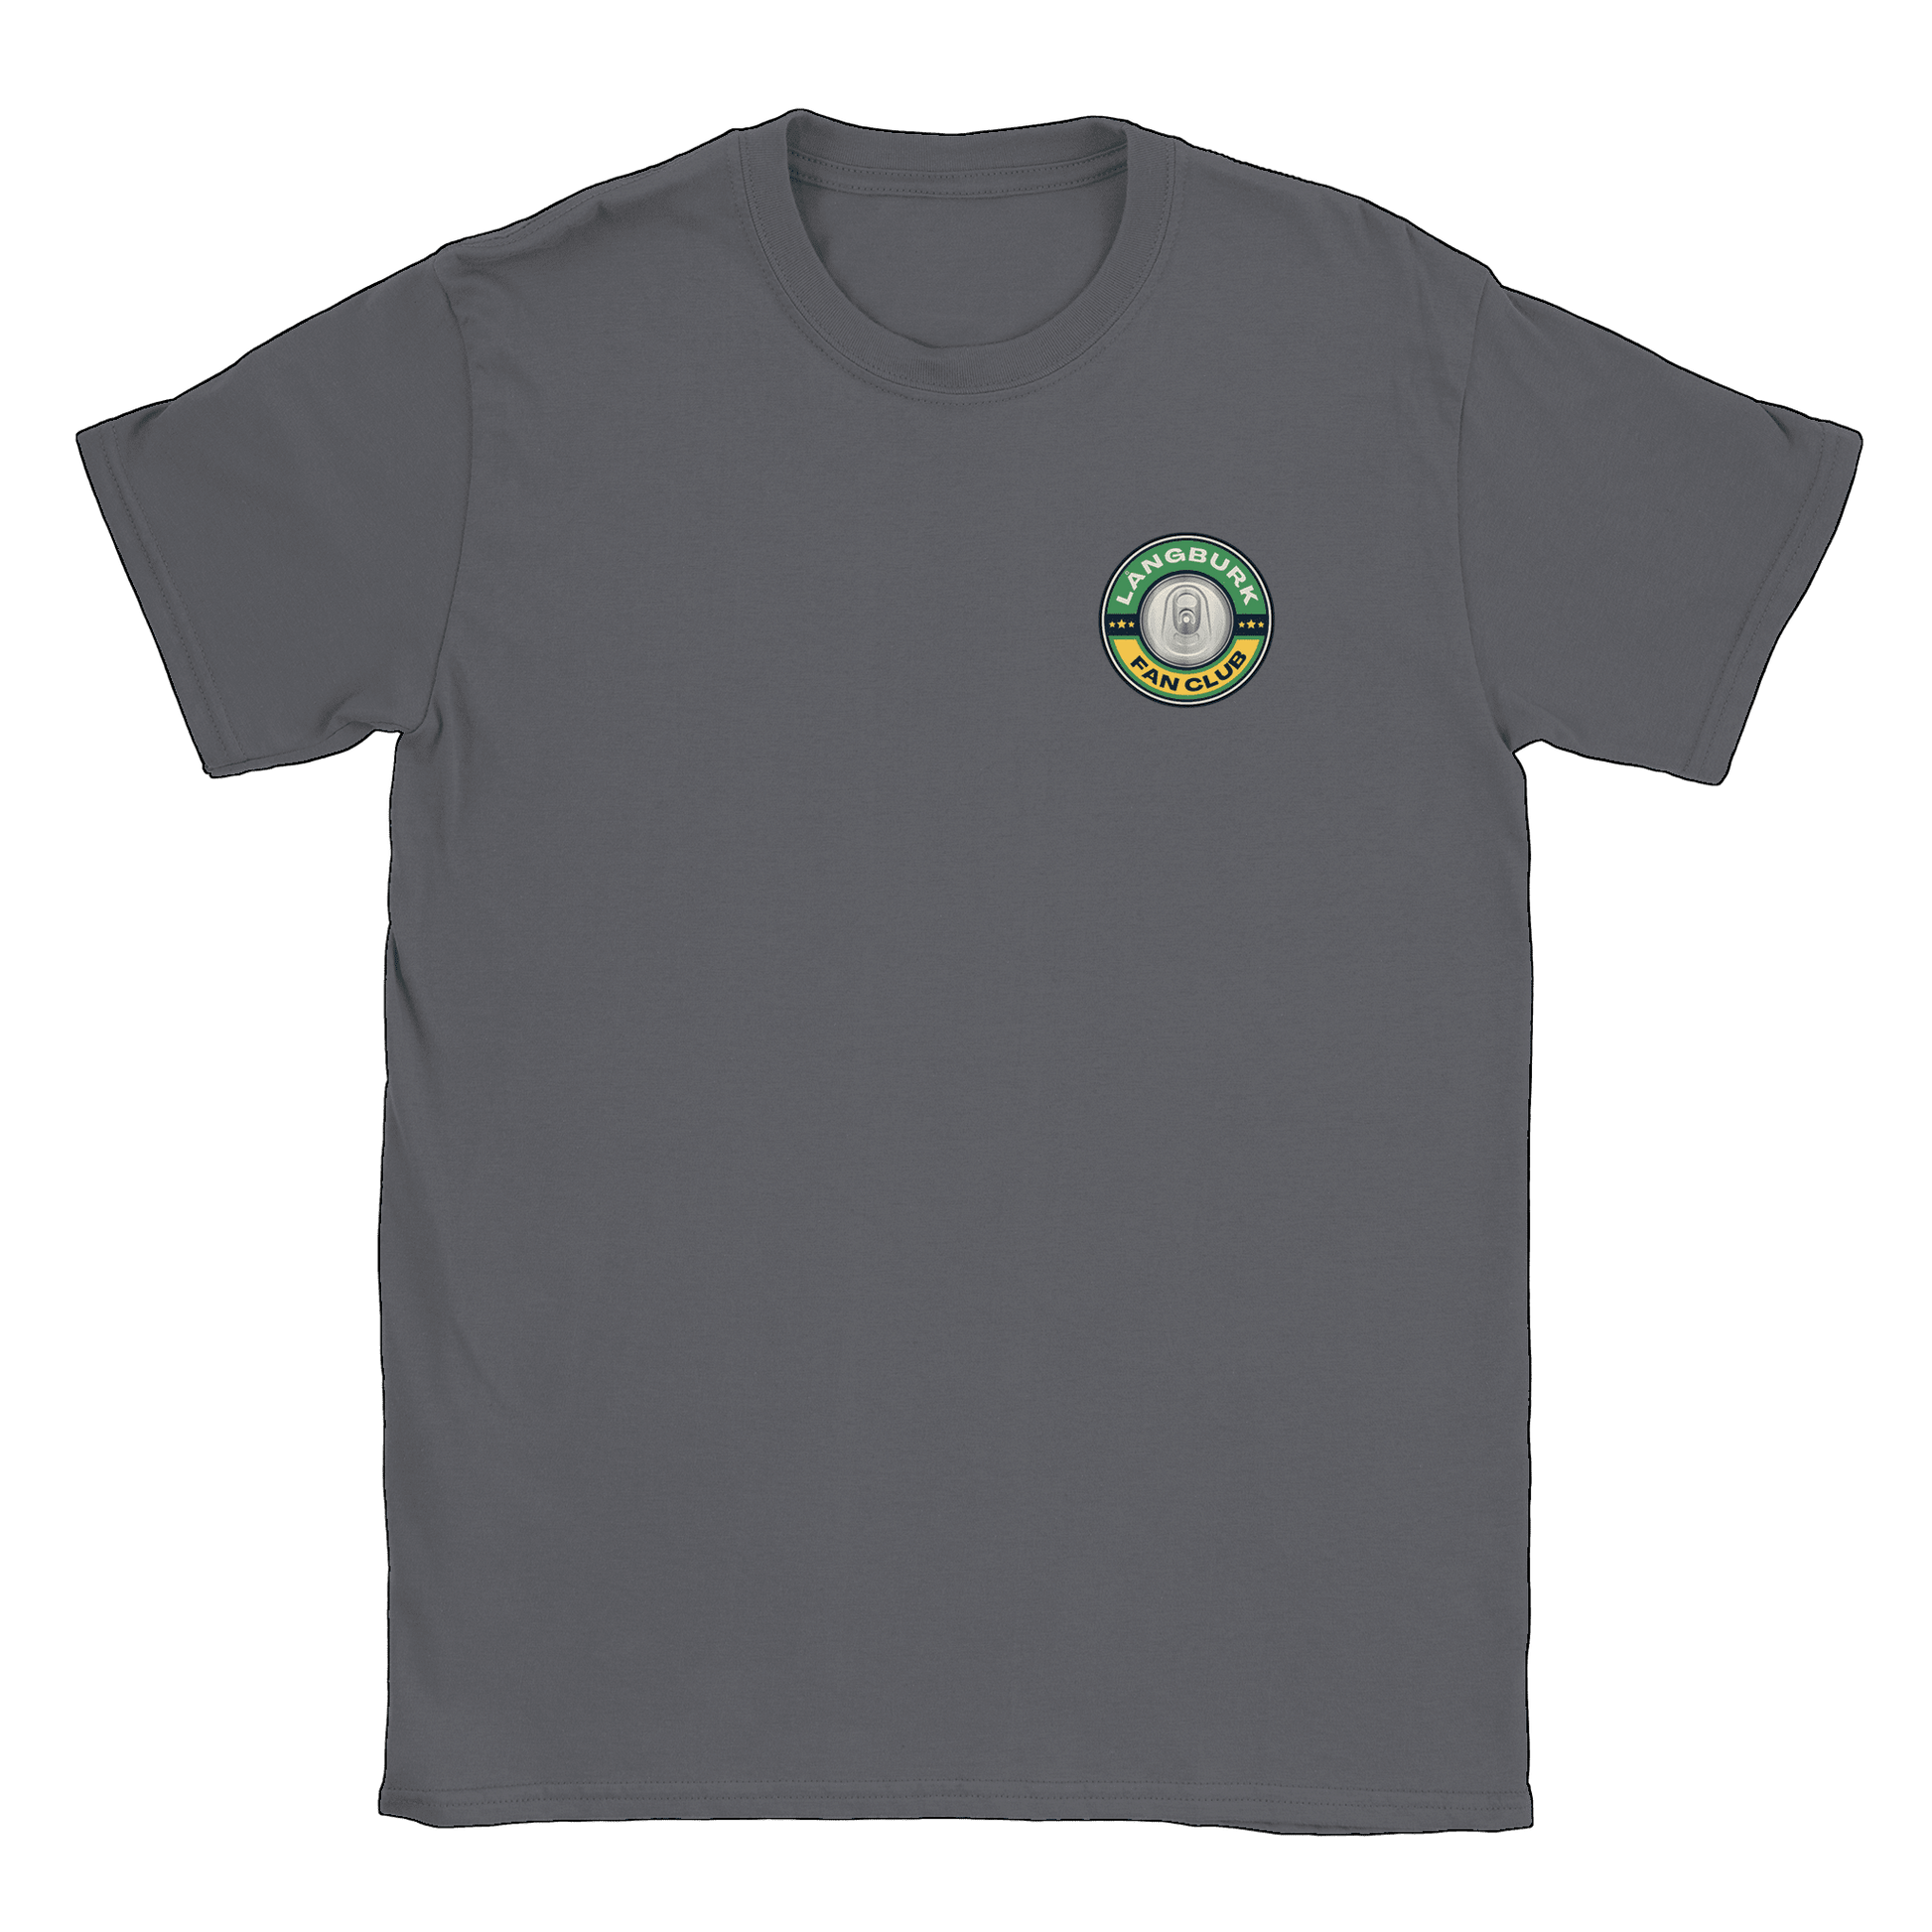 Långburk Fan Club liten - T-shirt Charcoal